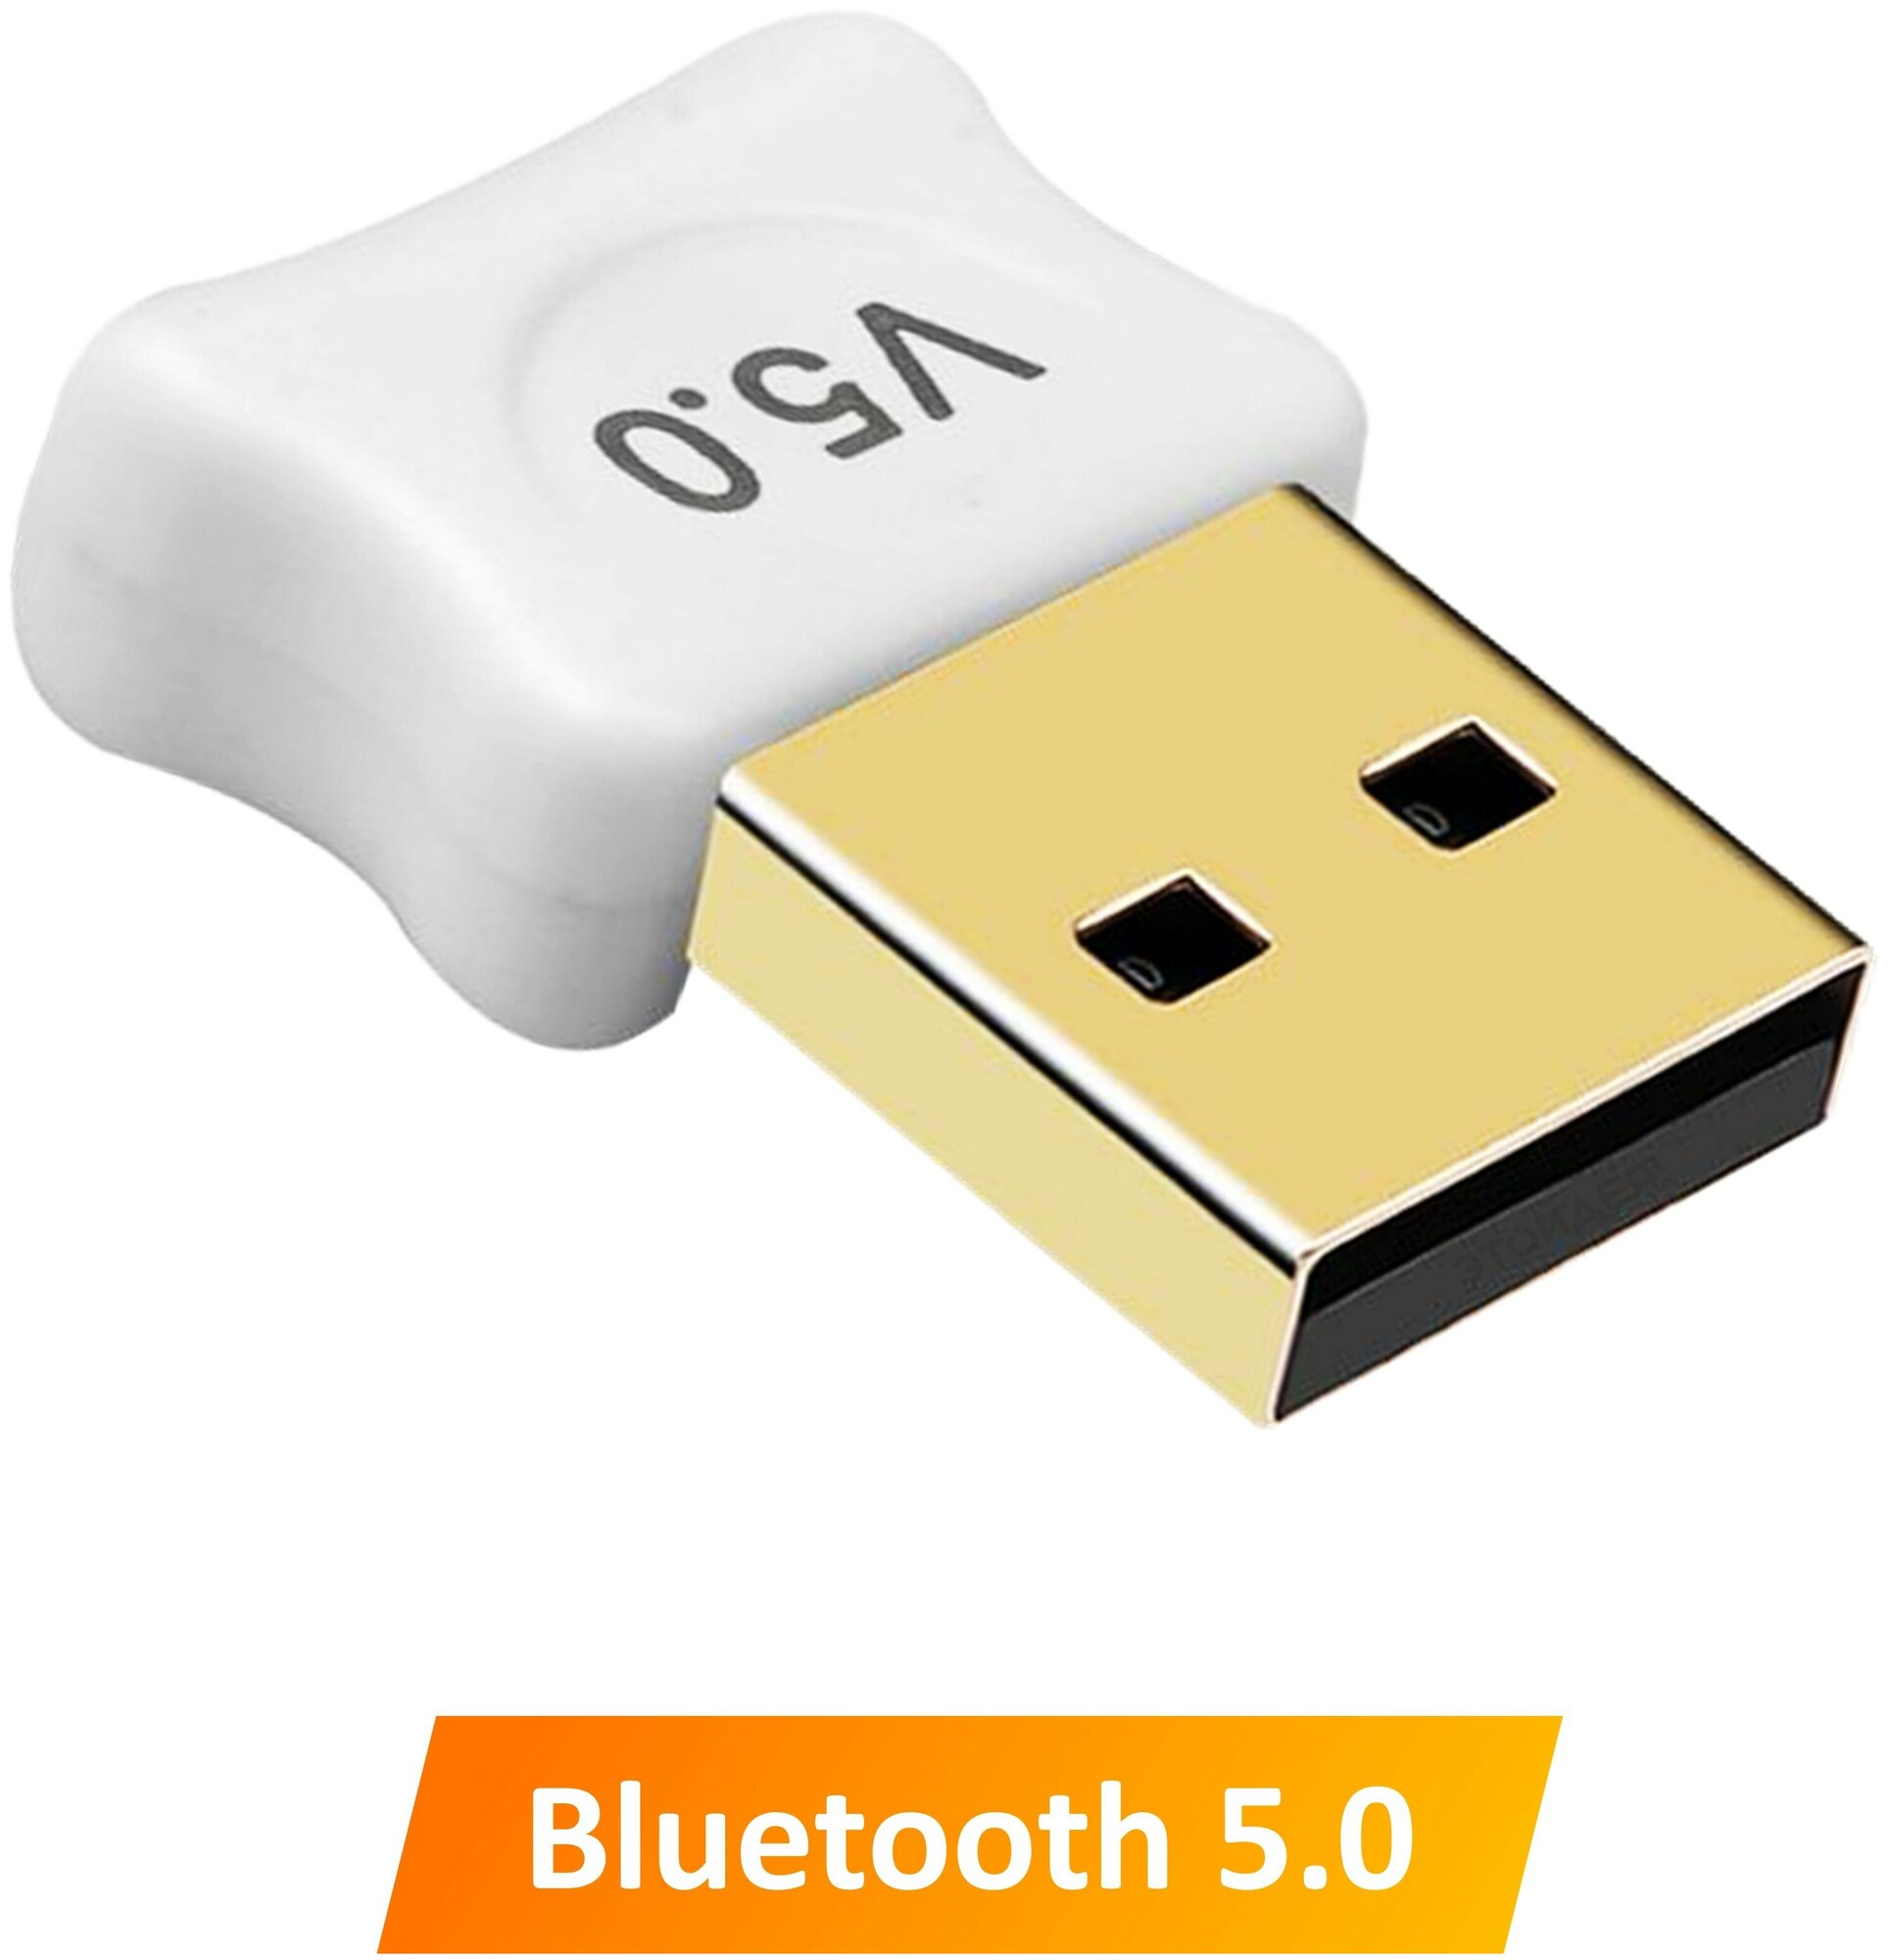 Адаптер Bluetooth 5.0 для компьютера ноутбука / для подключения беспроводных устройств USB 2.0